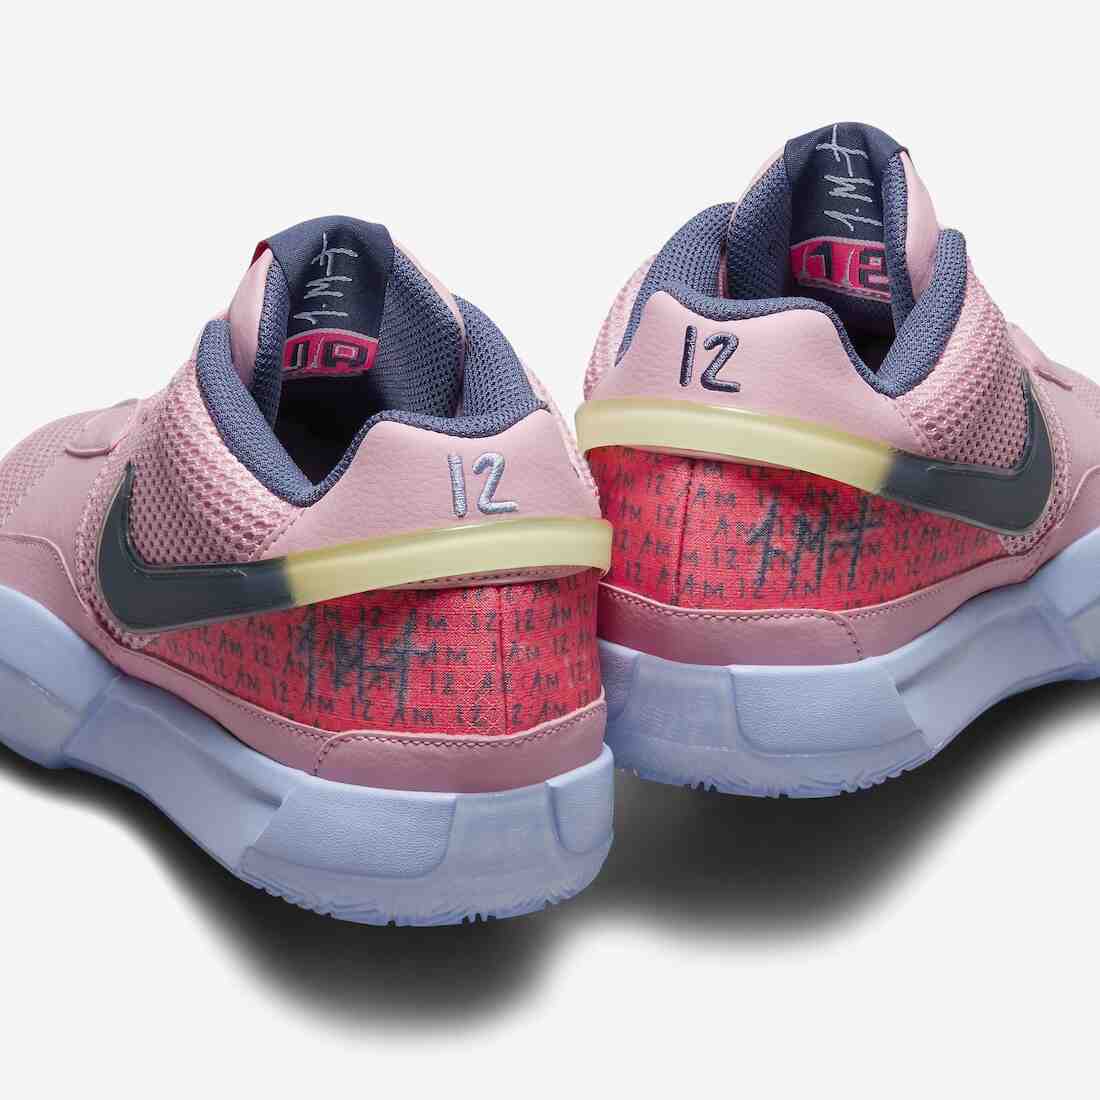 篮球鞋, Nike Ja 1, NIKE, Ja Morant - Nike Ja 1 PE “Autograph”将于2023年假日发布。